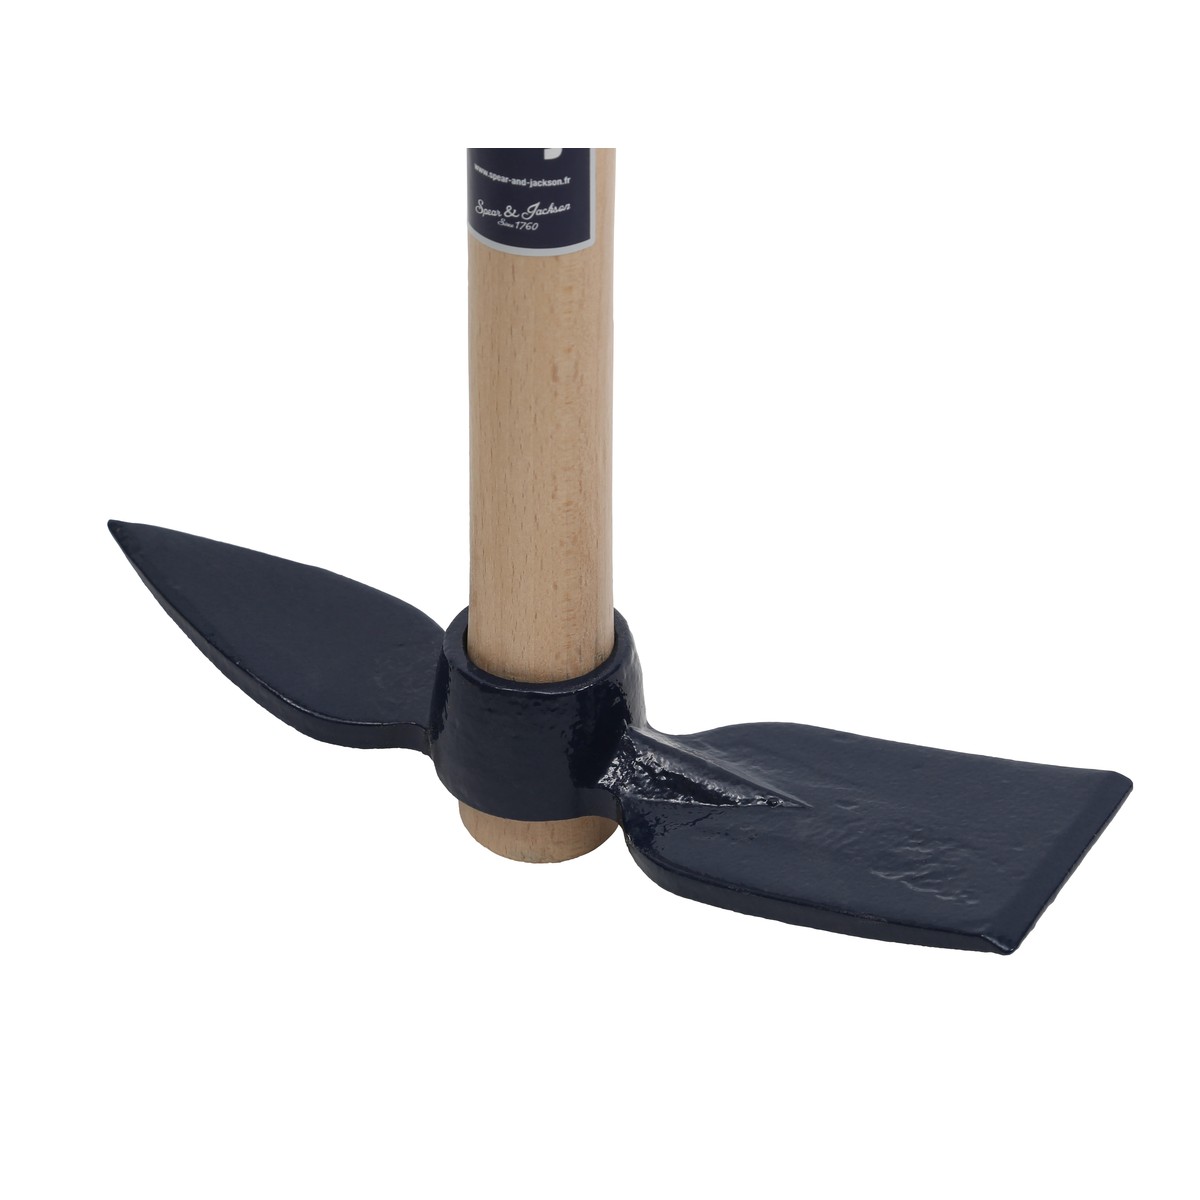 Spear & Jackson Petits outils de jardin Serfouette forgée panne et langue de 21cm manche bois 100% PEFC  46.5x21.5x5.6cm